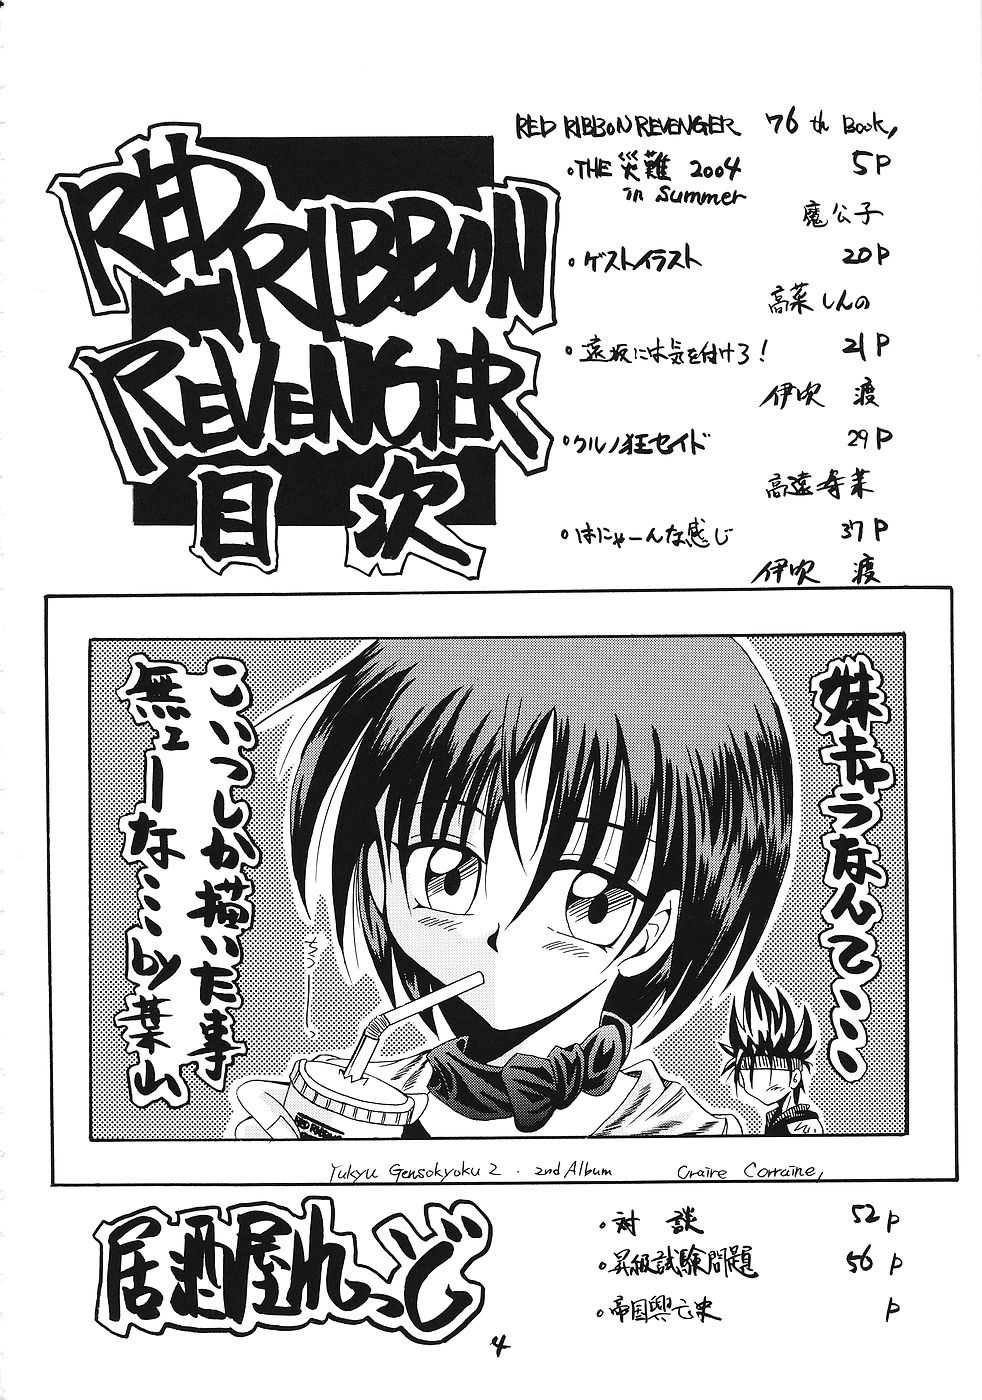 [RED RIBBON REVENGER] Imouto &amp; Shuudoujo [RED RIBBON REVENGER] 妹&amp;修道女